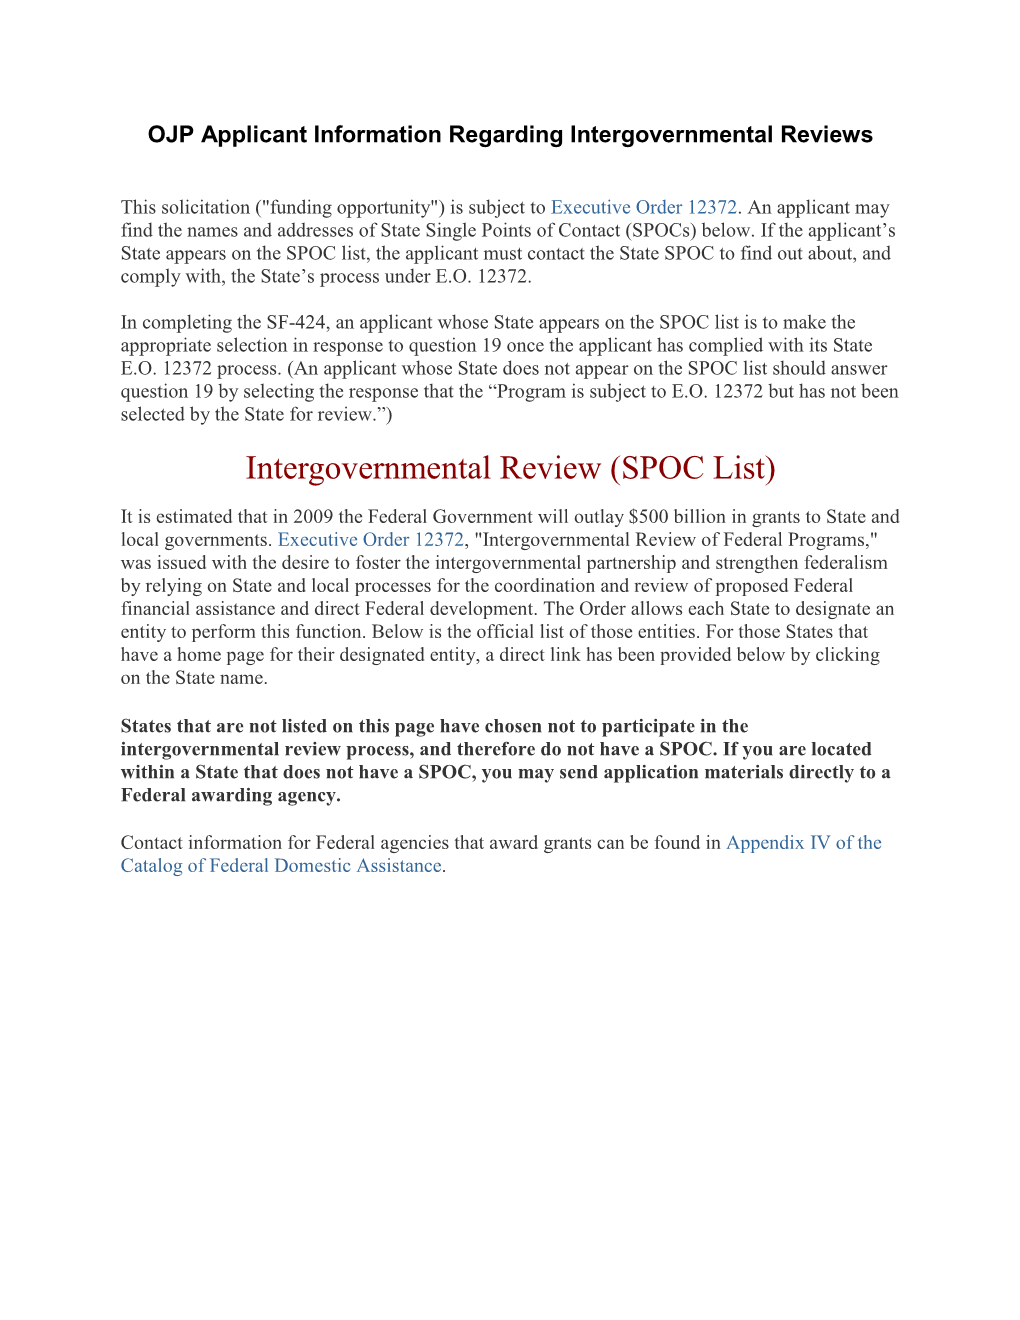 OJP Applicant Information Regarding Intergovernmental Reviews